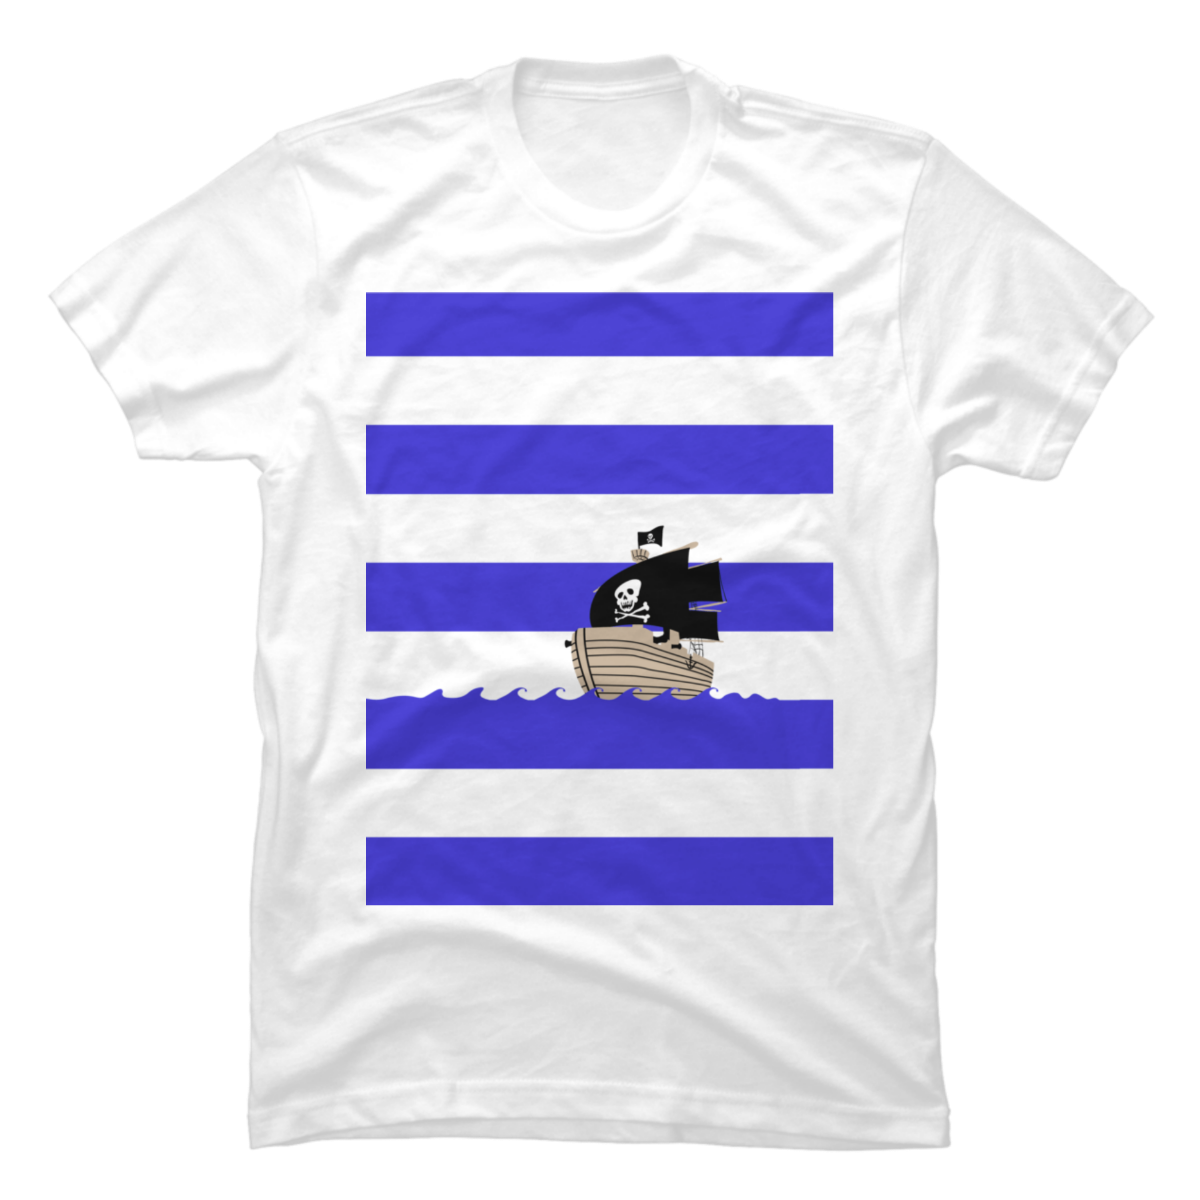 pirate striped shirts